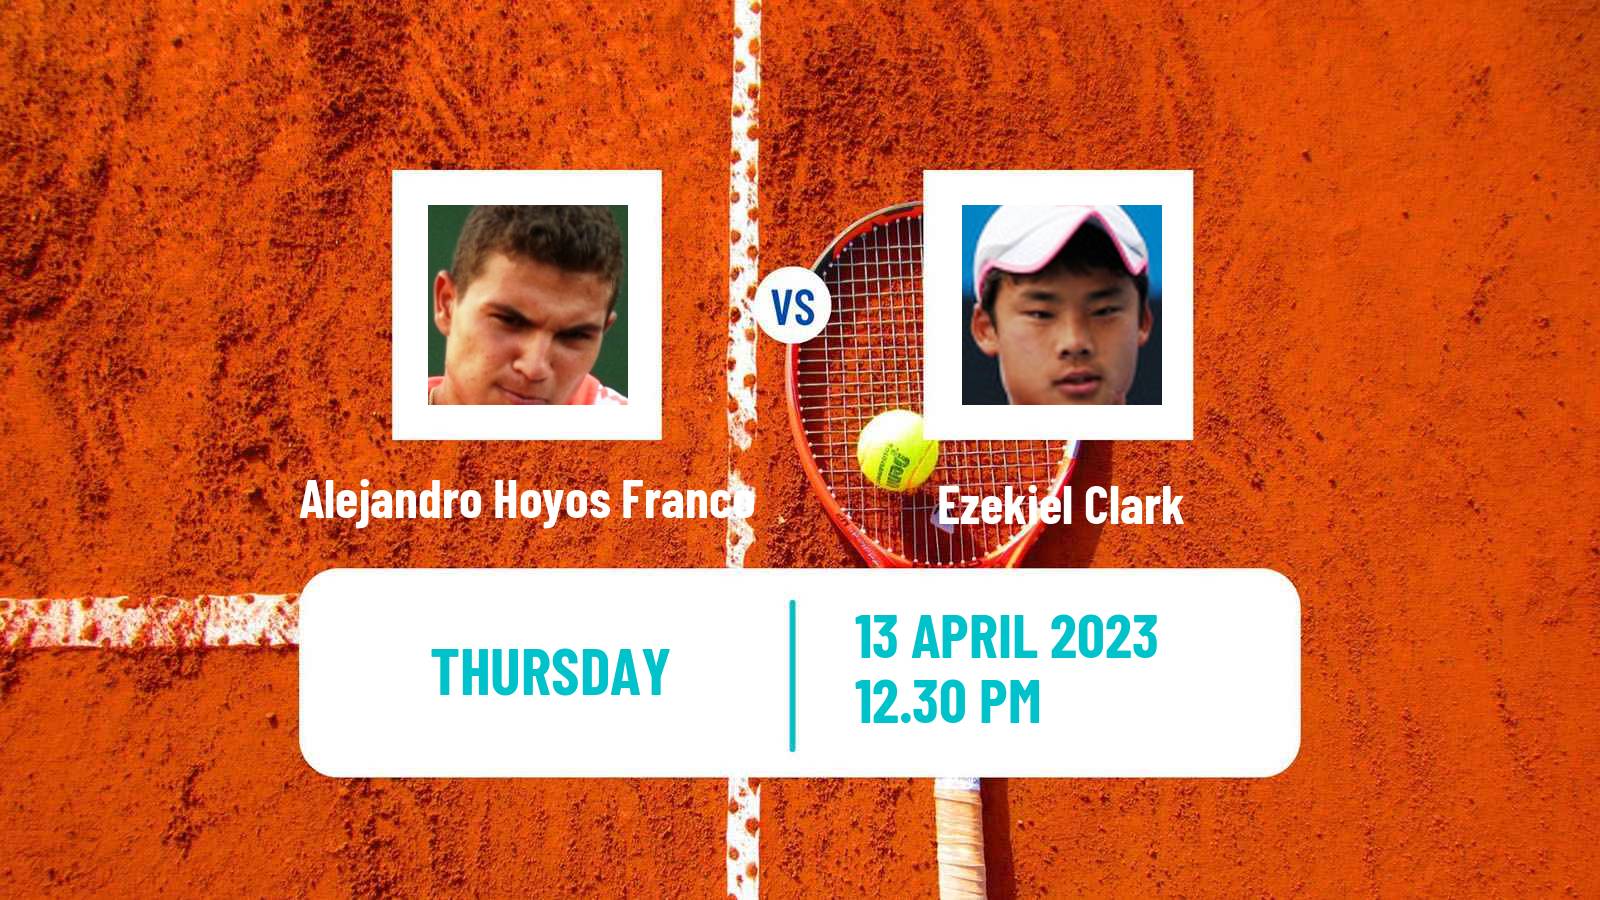 Tennis ITF Tournaments Alejandro Hoyos Franco - Ezekiel Clark